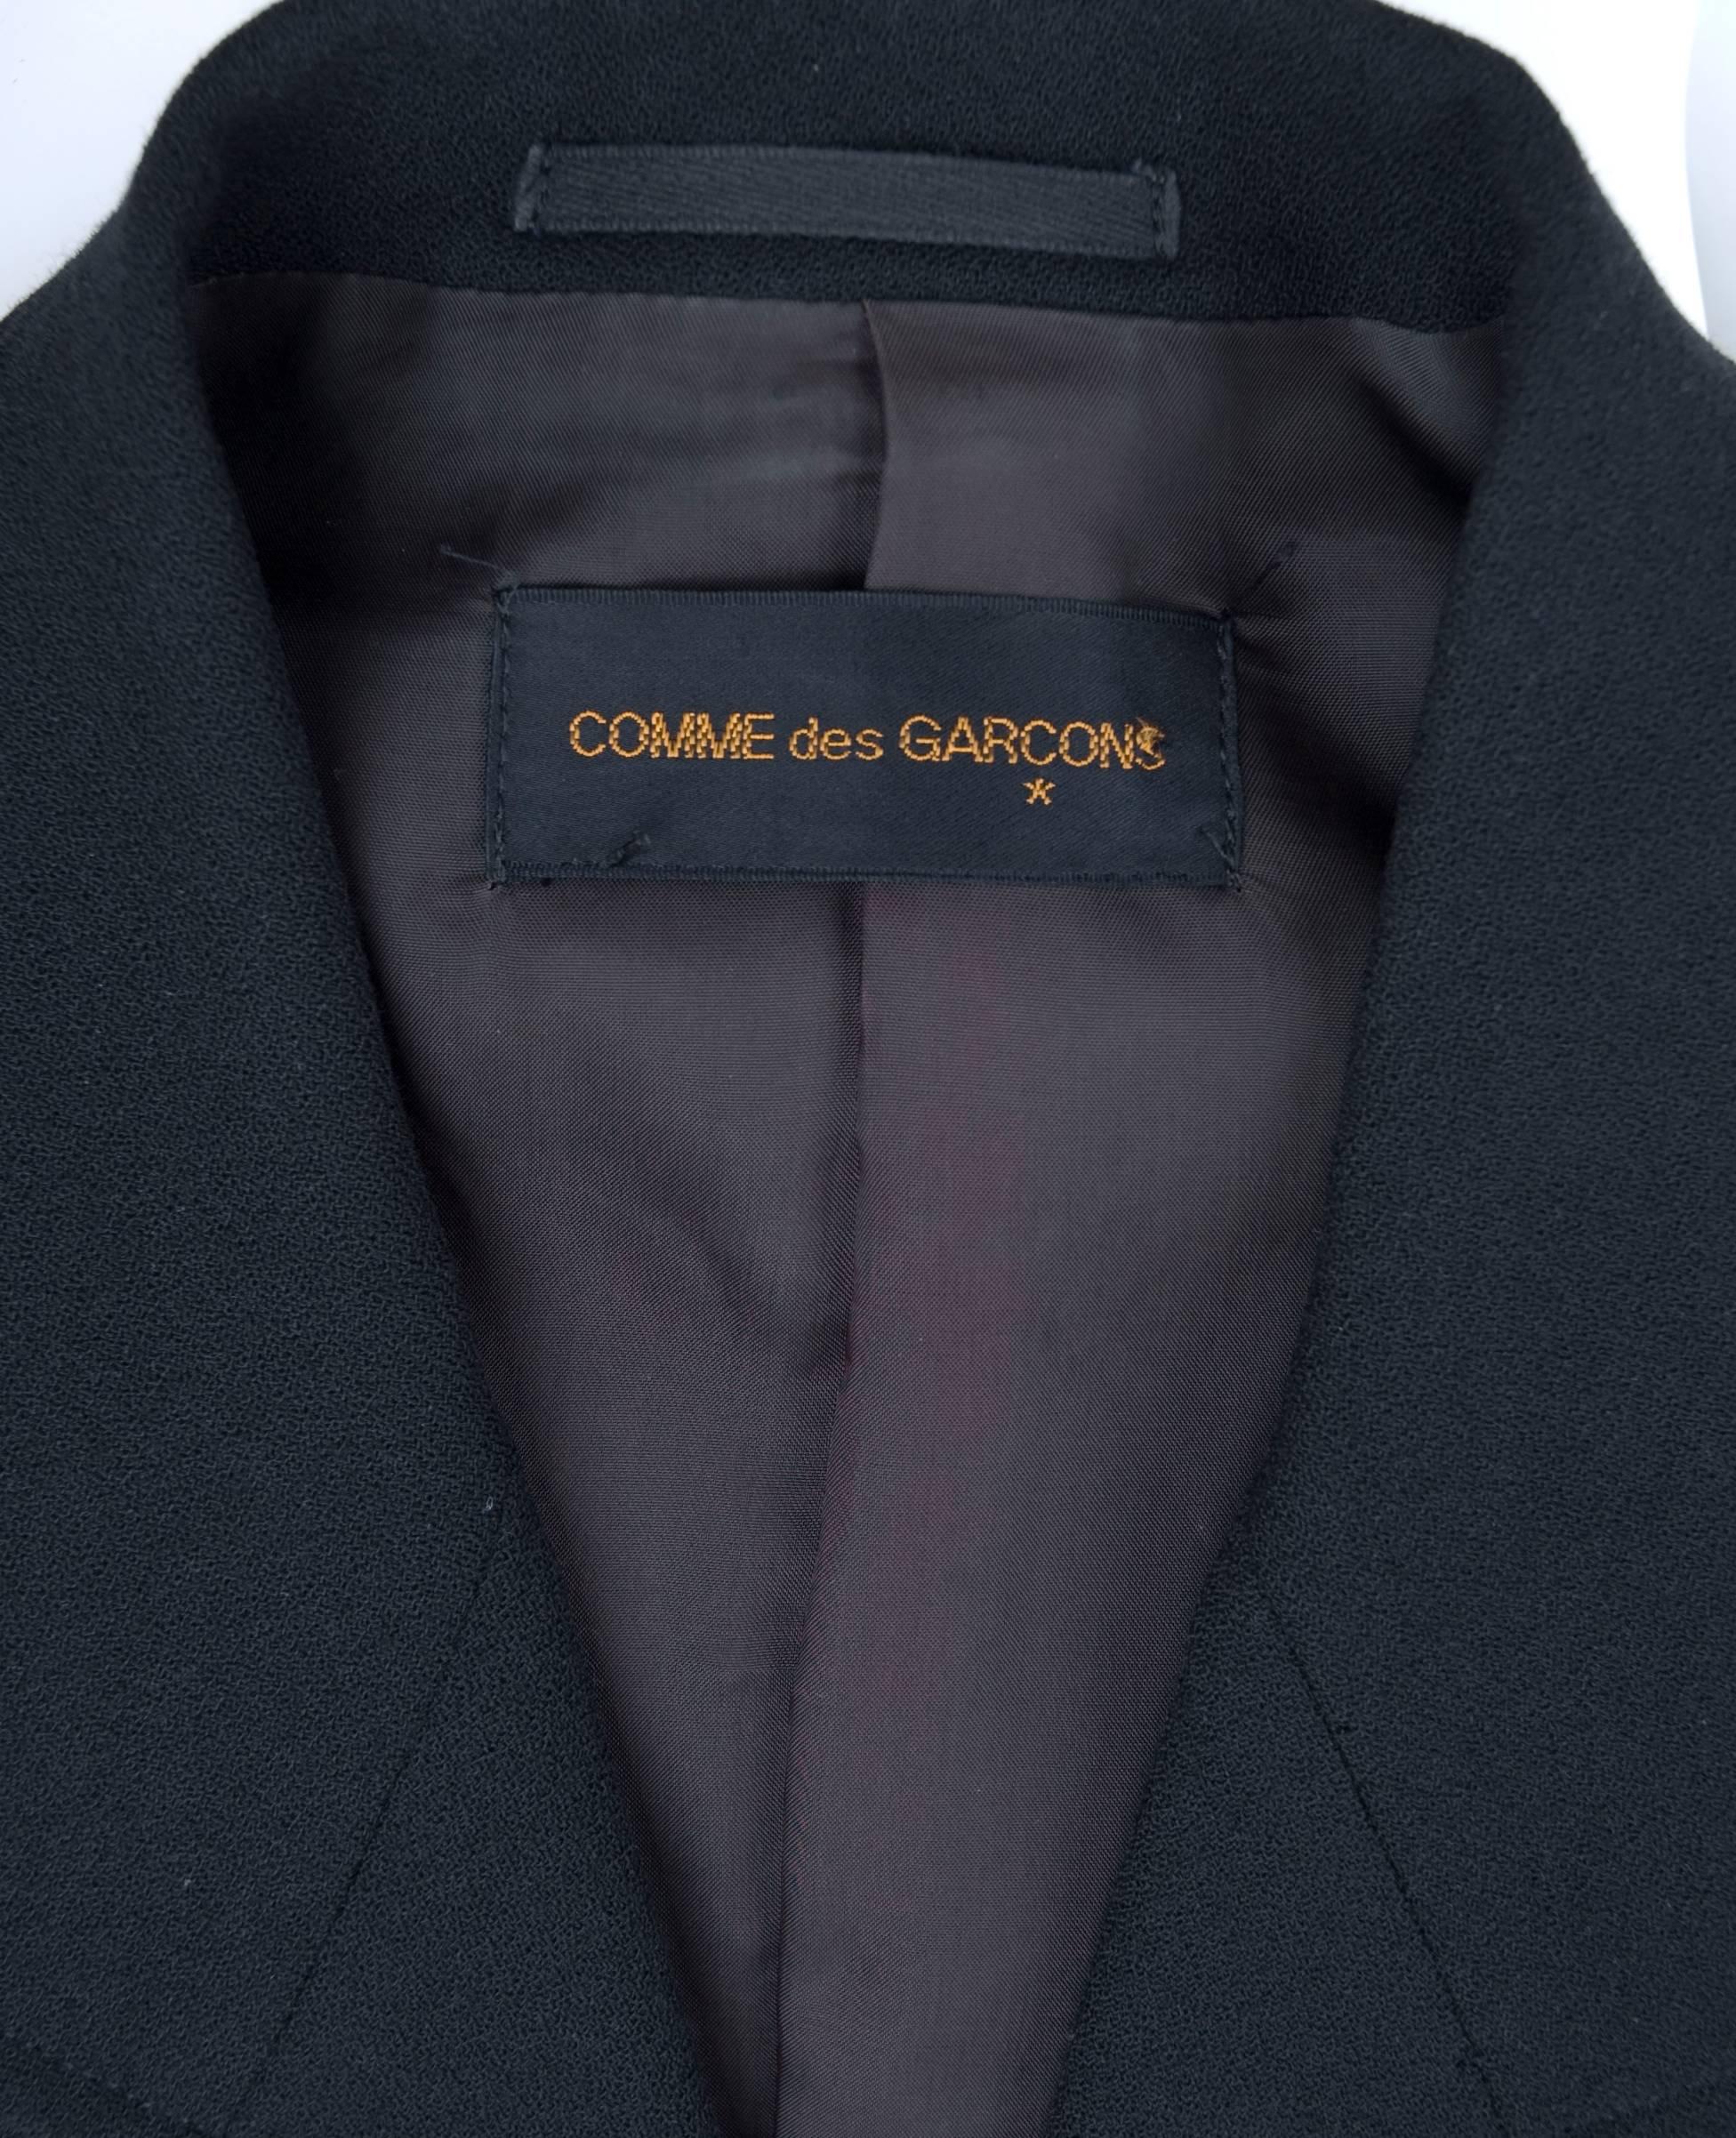 Vintage Comme des Garcons Black Jacket with Amazing Lace Detail For Sale 3